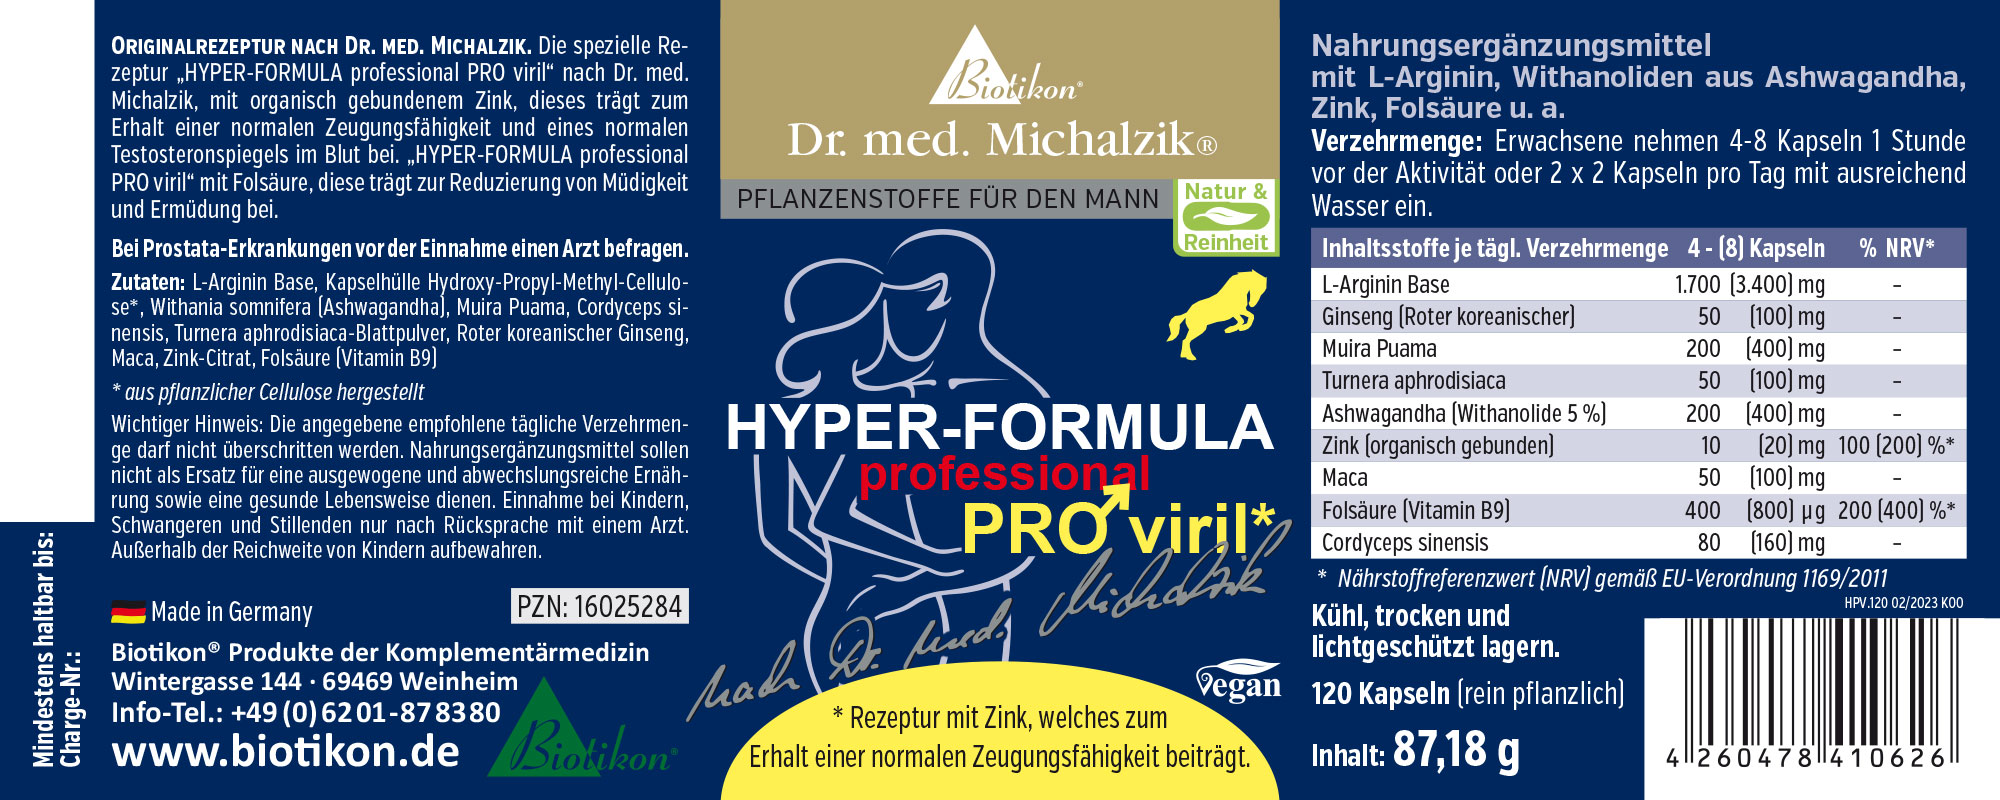 Hyper Formula PRO Viril nach Dr. med. Michalzik, 2er-Set